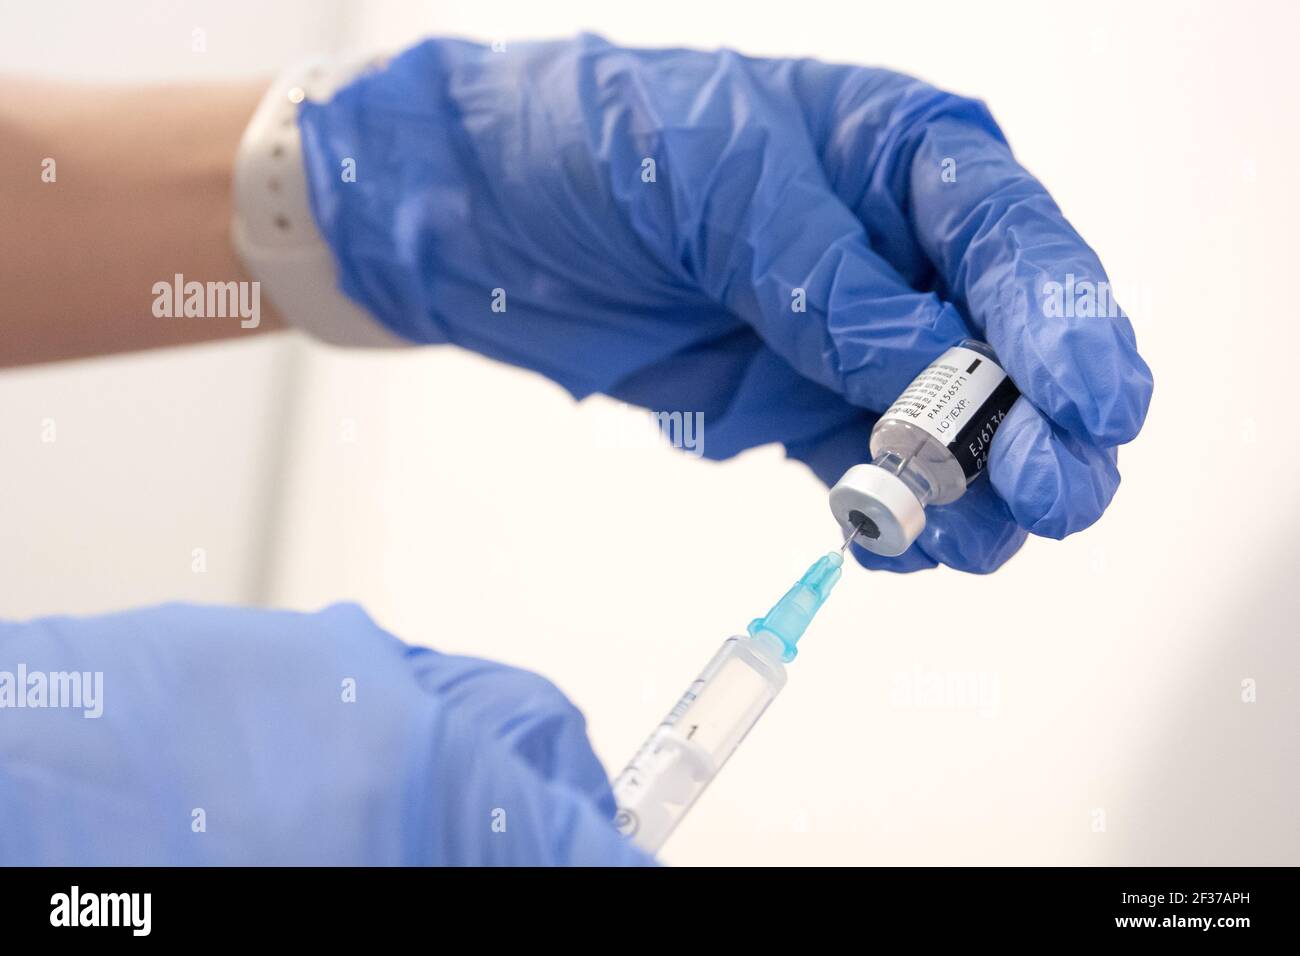 Pfizer–BioNTech COVID-19 vaccine in Poland, January 26th 2021 © Wojciech Strozyk / Alamy Stock Photo Stock Photo